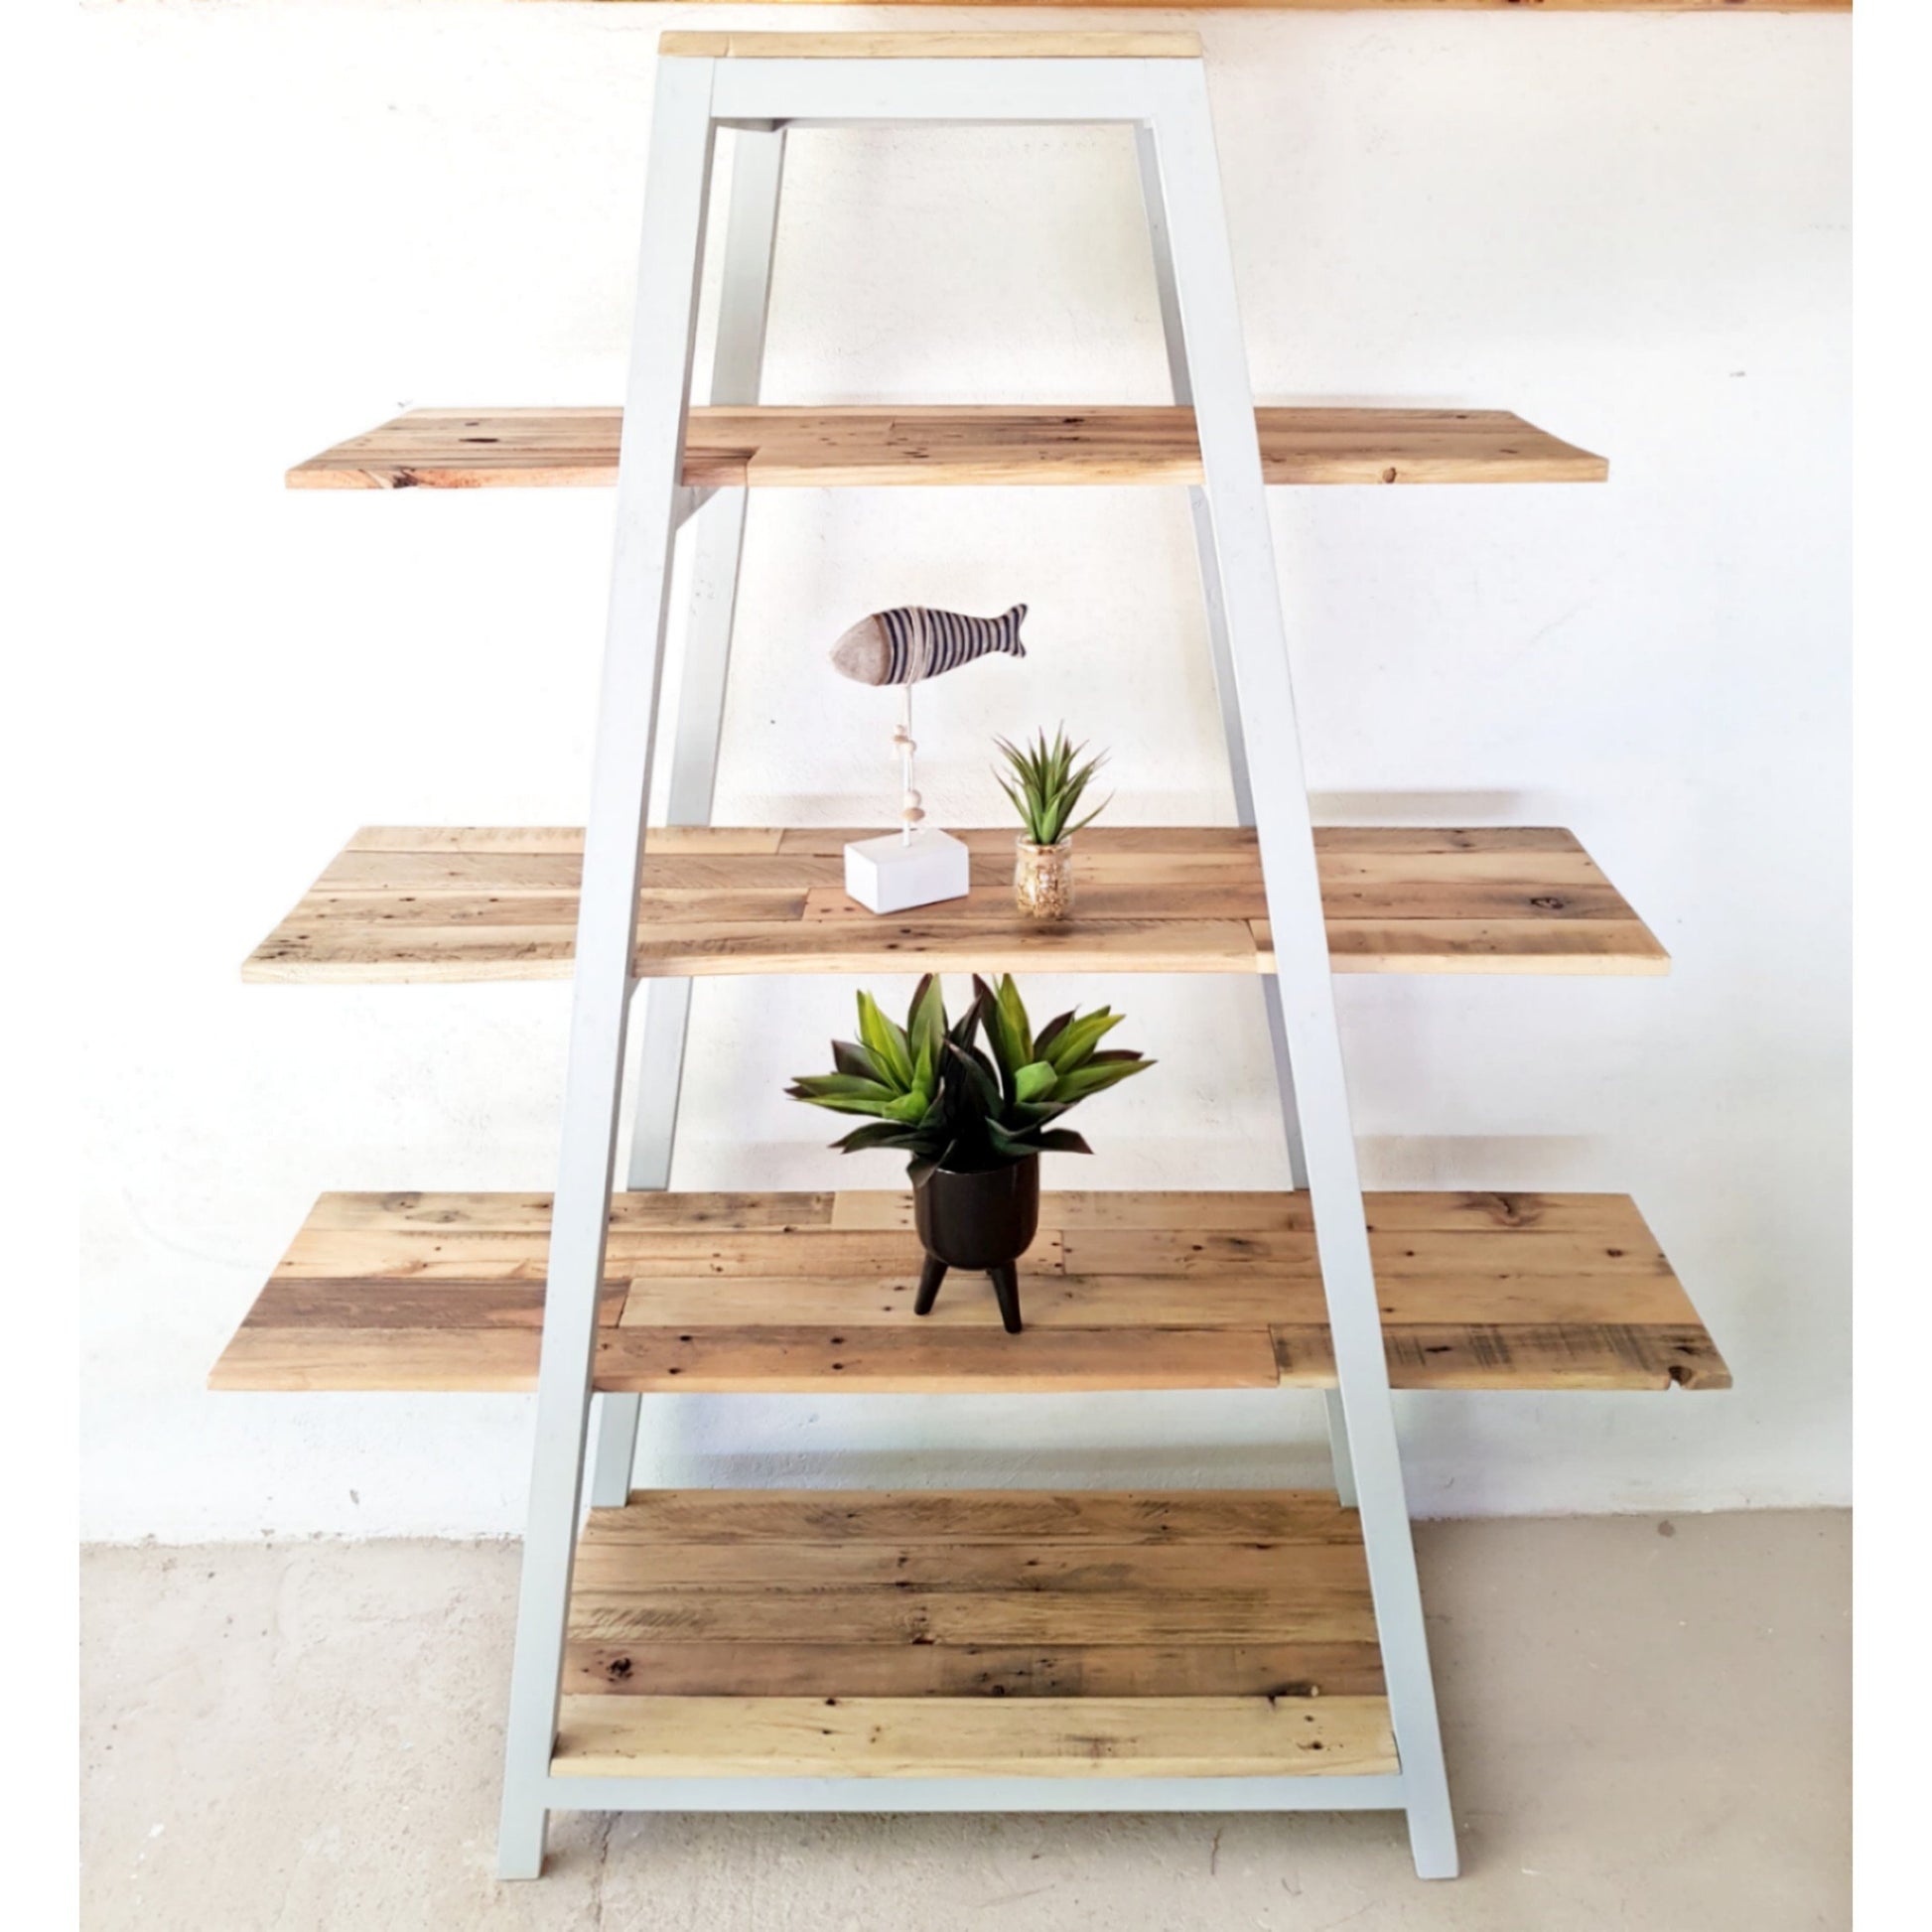 A-Frame Shelf - Furniture